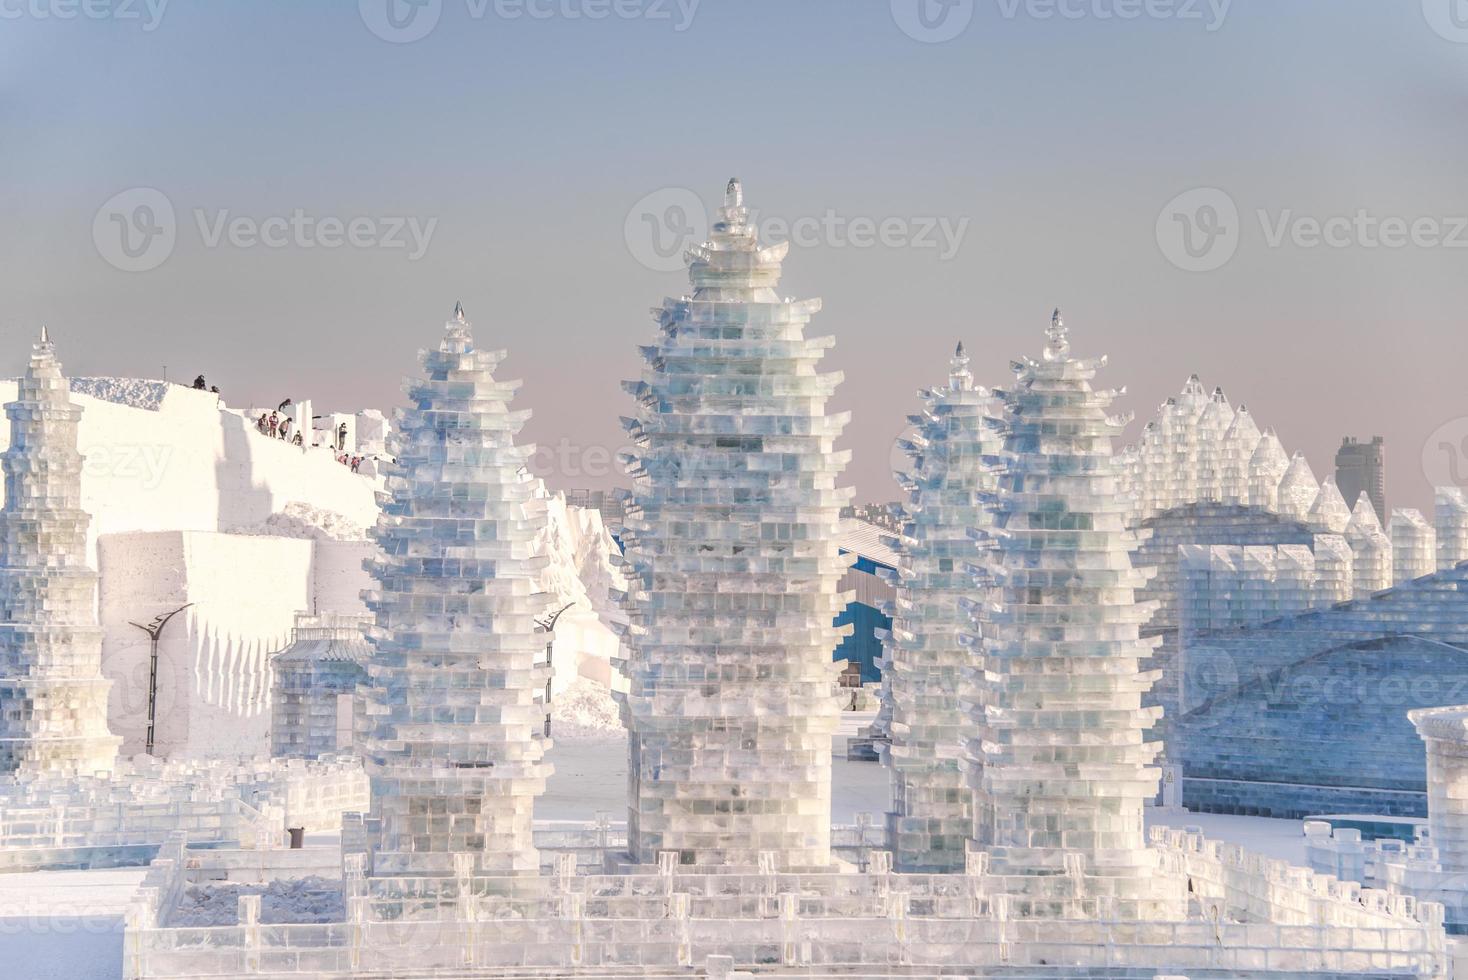 Harbin internazionale ghiaccio e neve scultura Festival è un annuale inverno Festival nel Harbin, Cina. esso è il mondo maggiore ghiaccio e neve Festival. foto